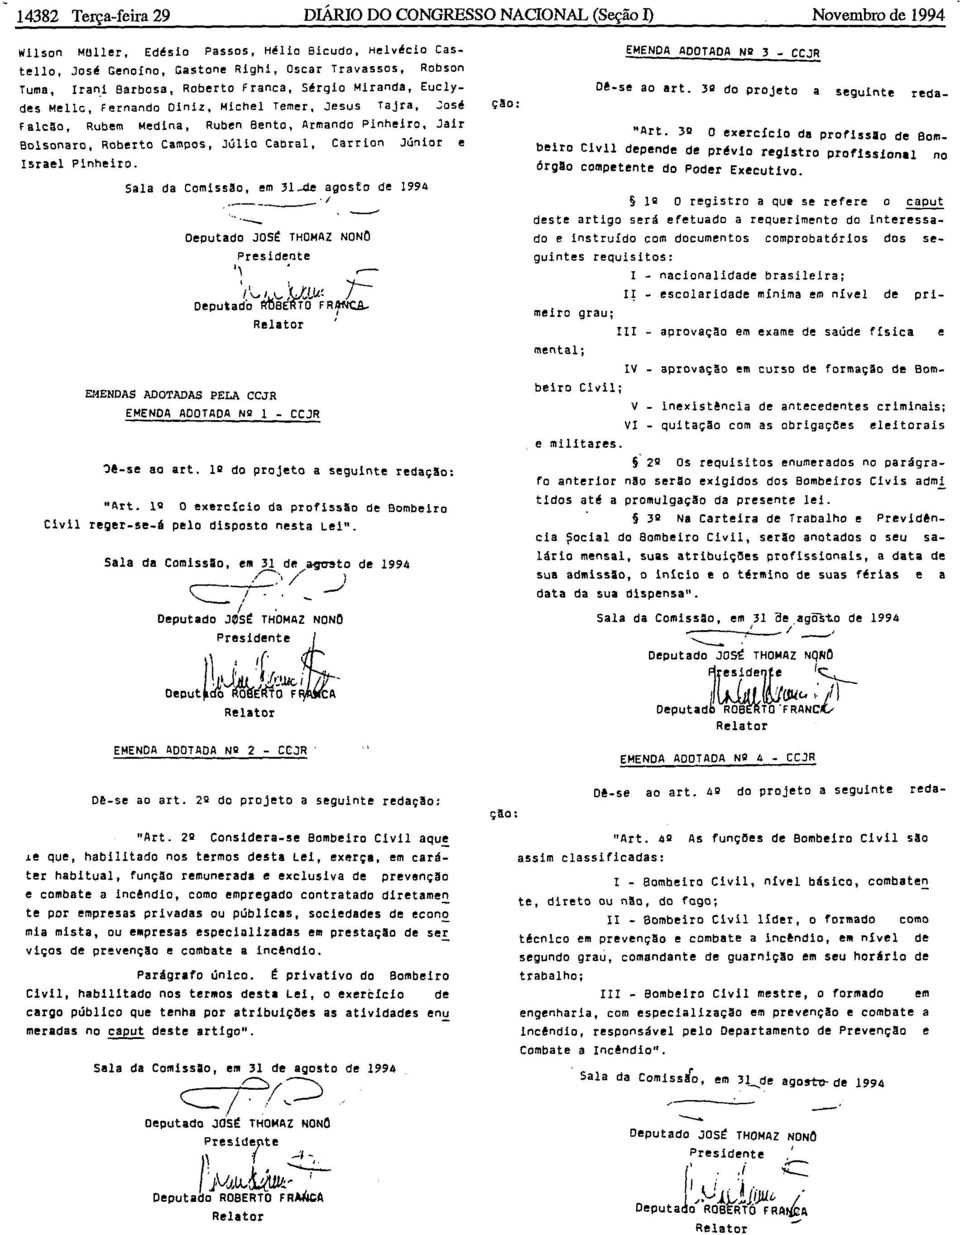 Júlio Cabral, Carrion Júnior e Israel Pinheiro. '- Sala da Comiss30, em 31-de agosto de 1994,.----- '1 Deputado JOSt THOMAZ NONO Presidente ". ~ '1\..!1.'- :U.Lv.